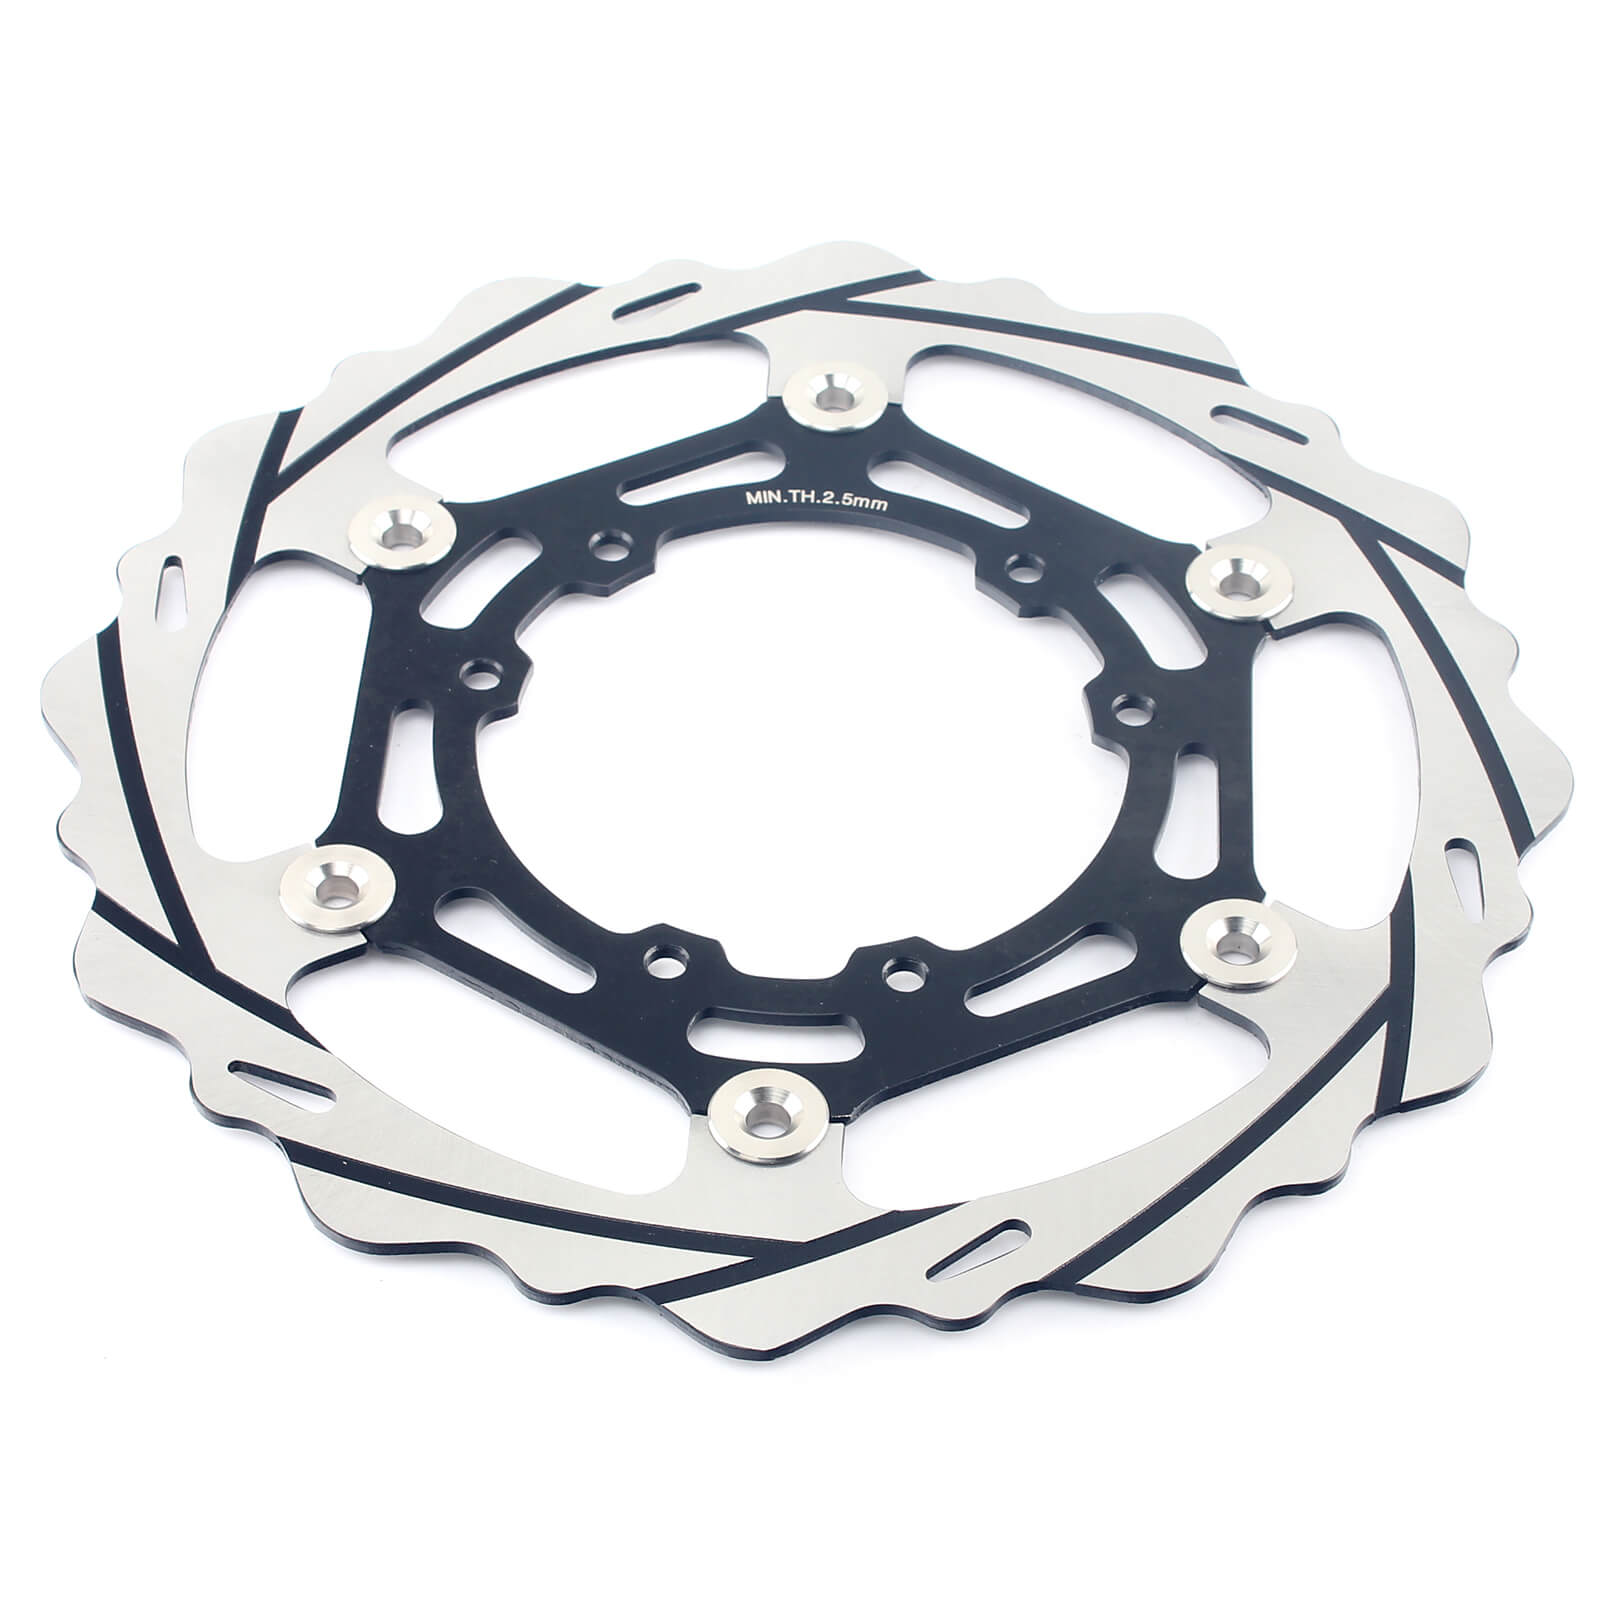 New Design 270mm Motorcycle Brake Rotors Oversize Front Disc Manufacturer